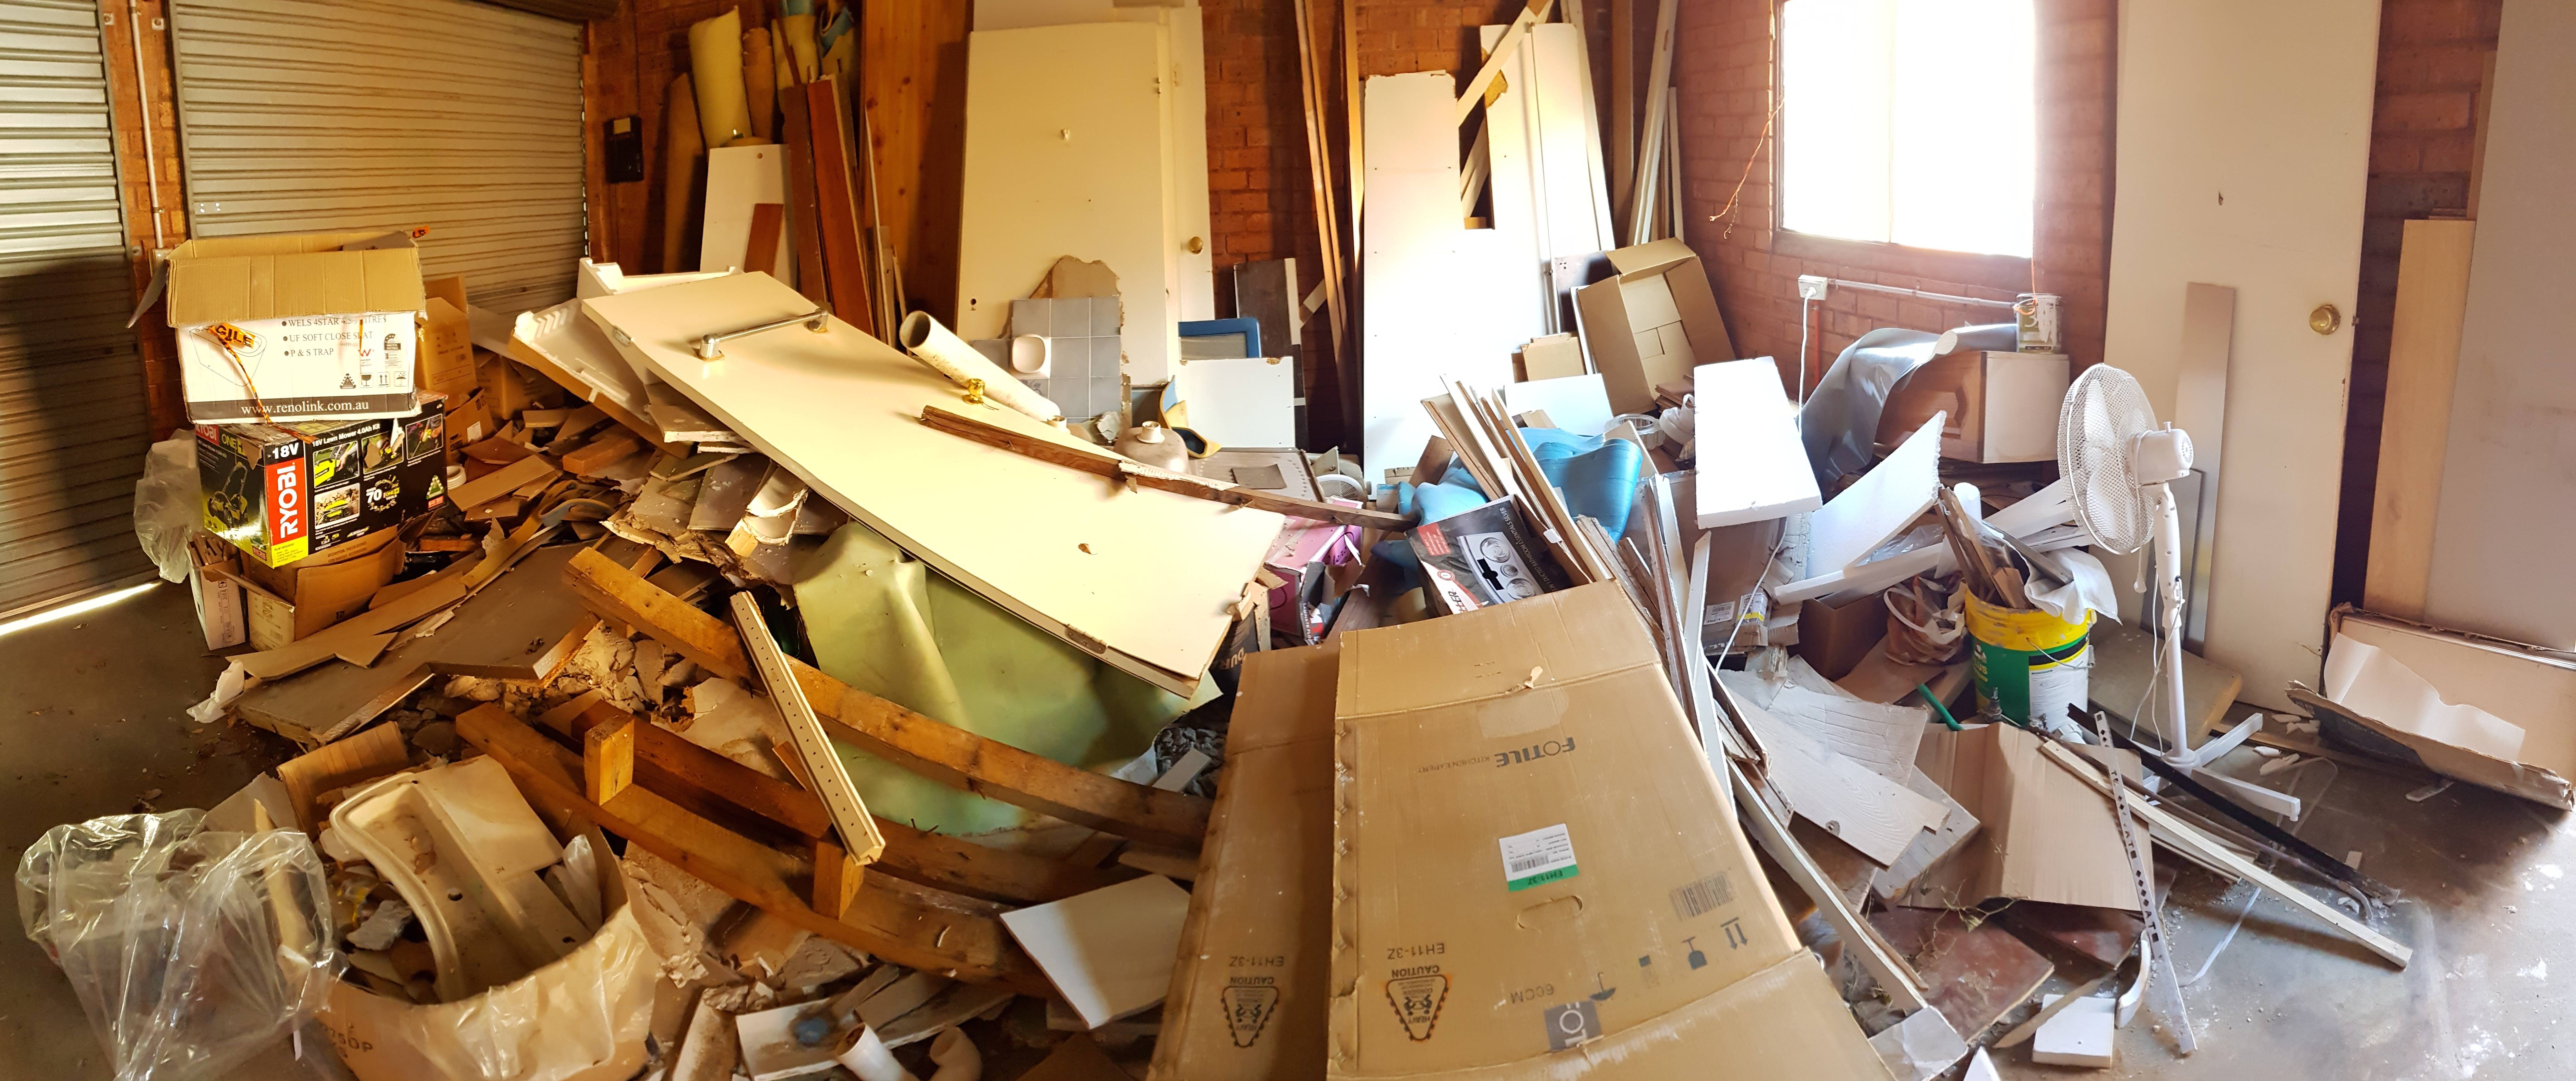 Куда выбрасывать отходы с мебелью после проведения ремонтных работ в квартире